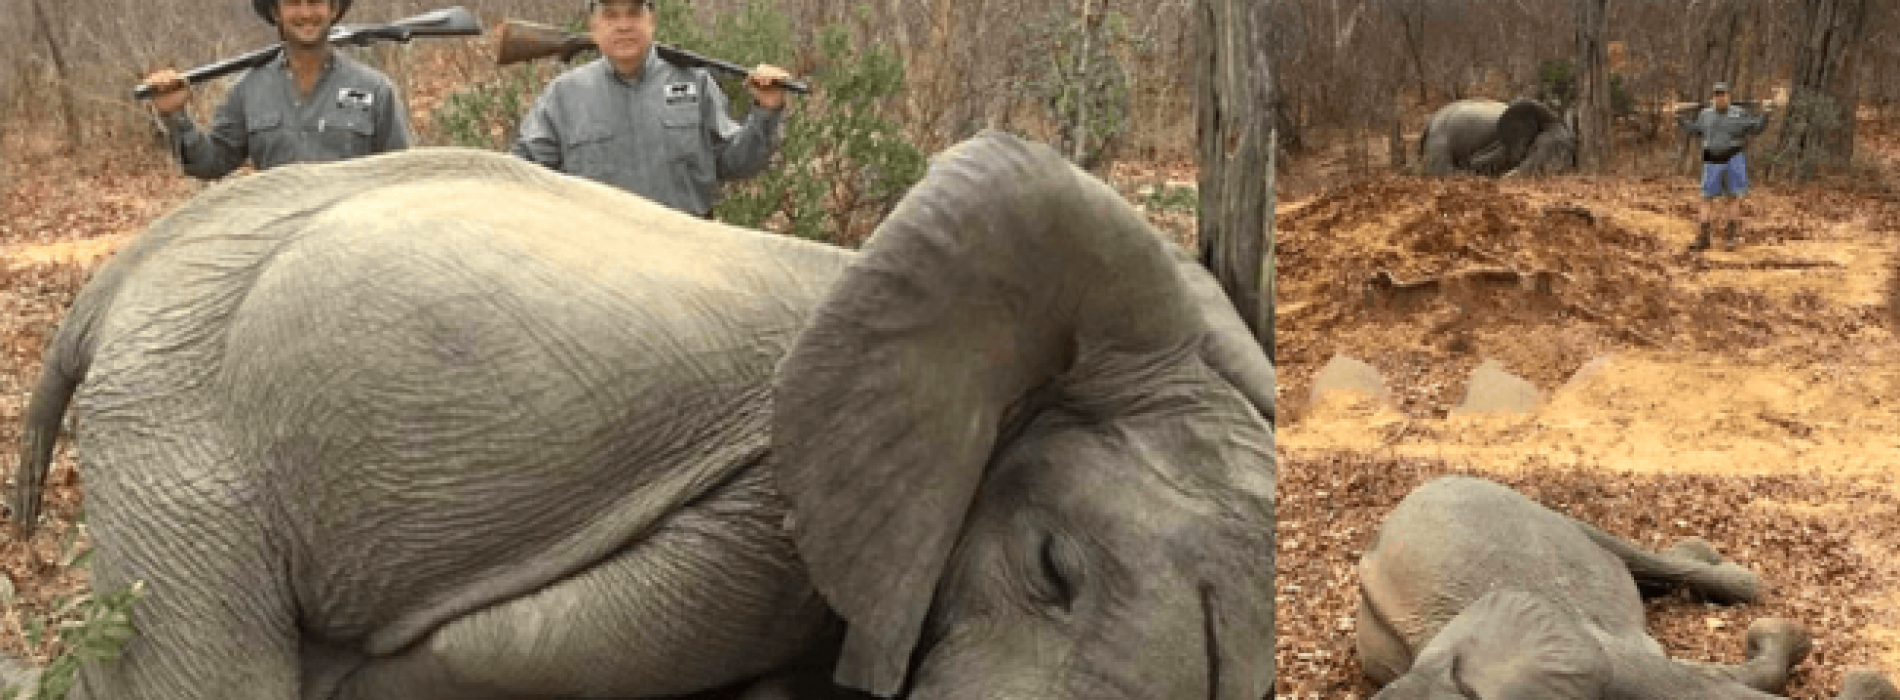 Rijke Amerikaanse zakenman poseert met dode babyolifanten die hij trots heeft vermoord in Afrika